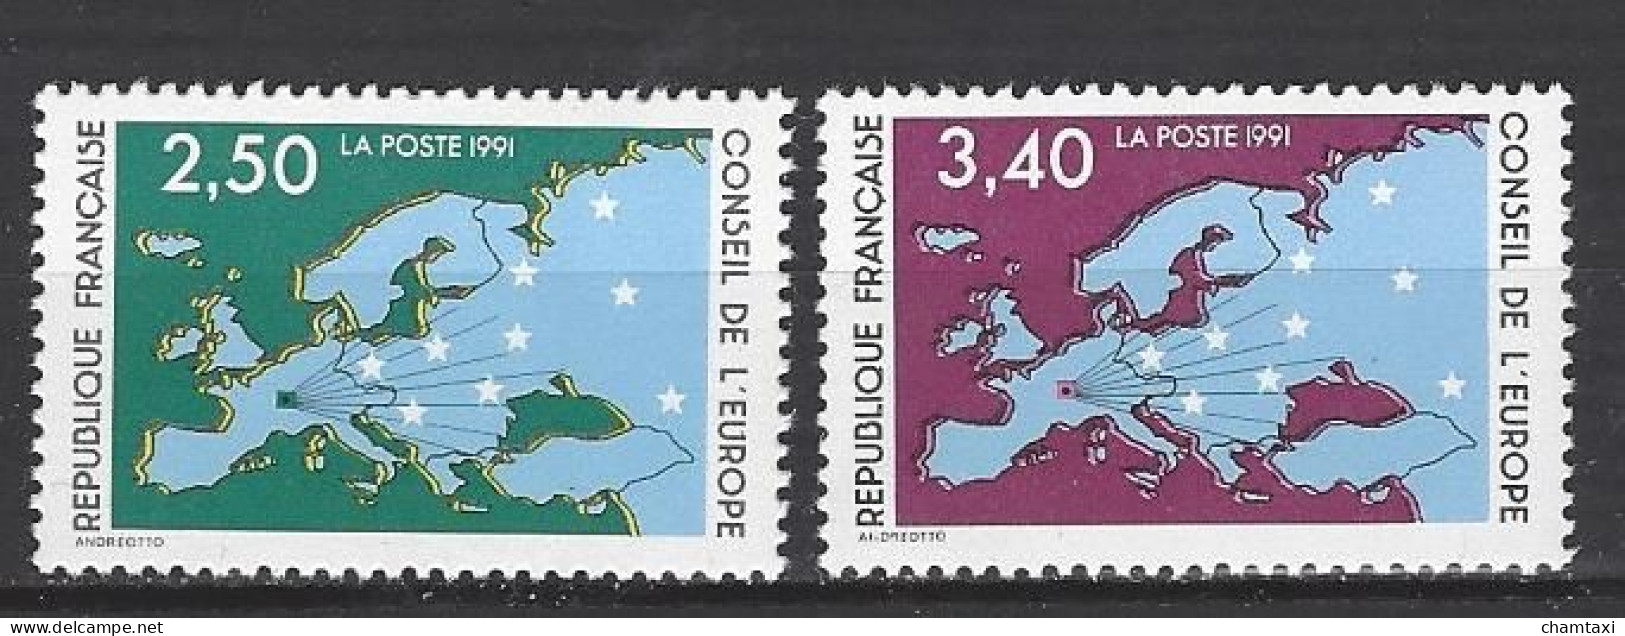 CONSEIL DE L EUROPE 1991 TIMBRE SERVICE 106 107 CARTE D EUROPE ET ETOILES - Neufs